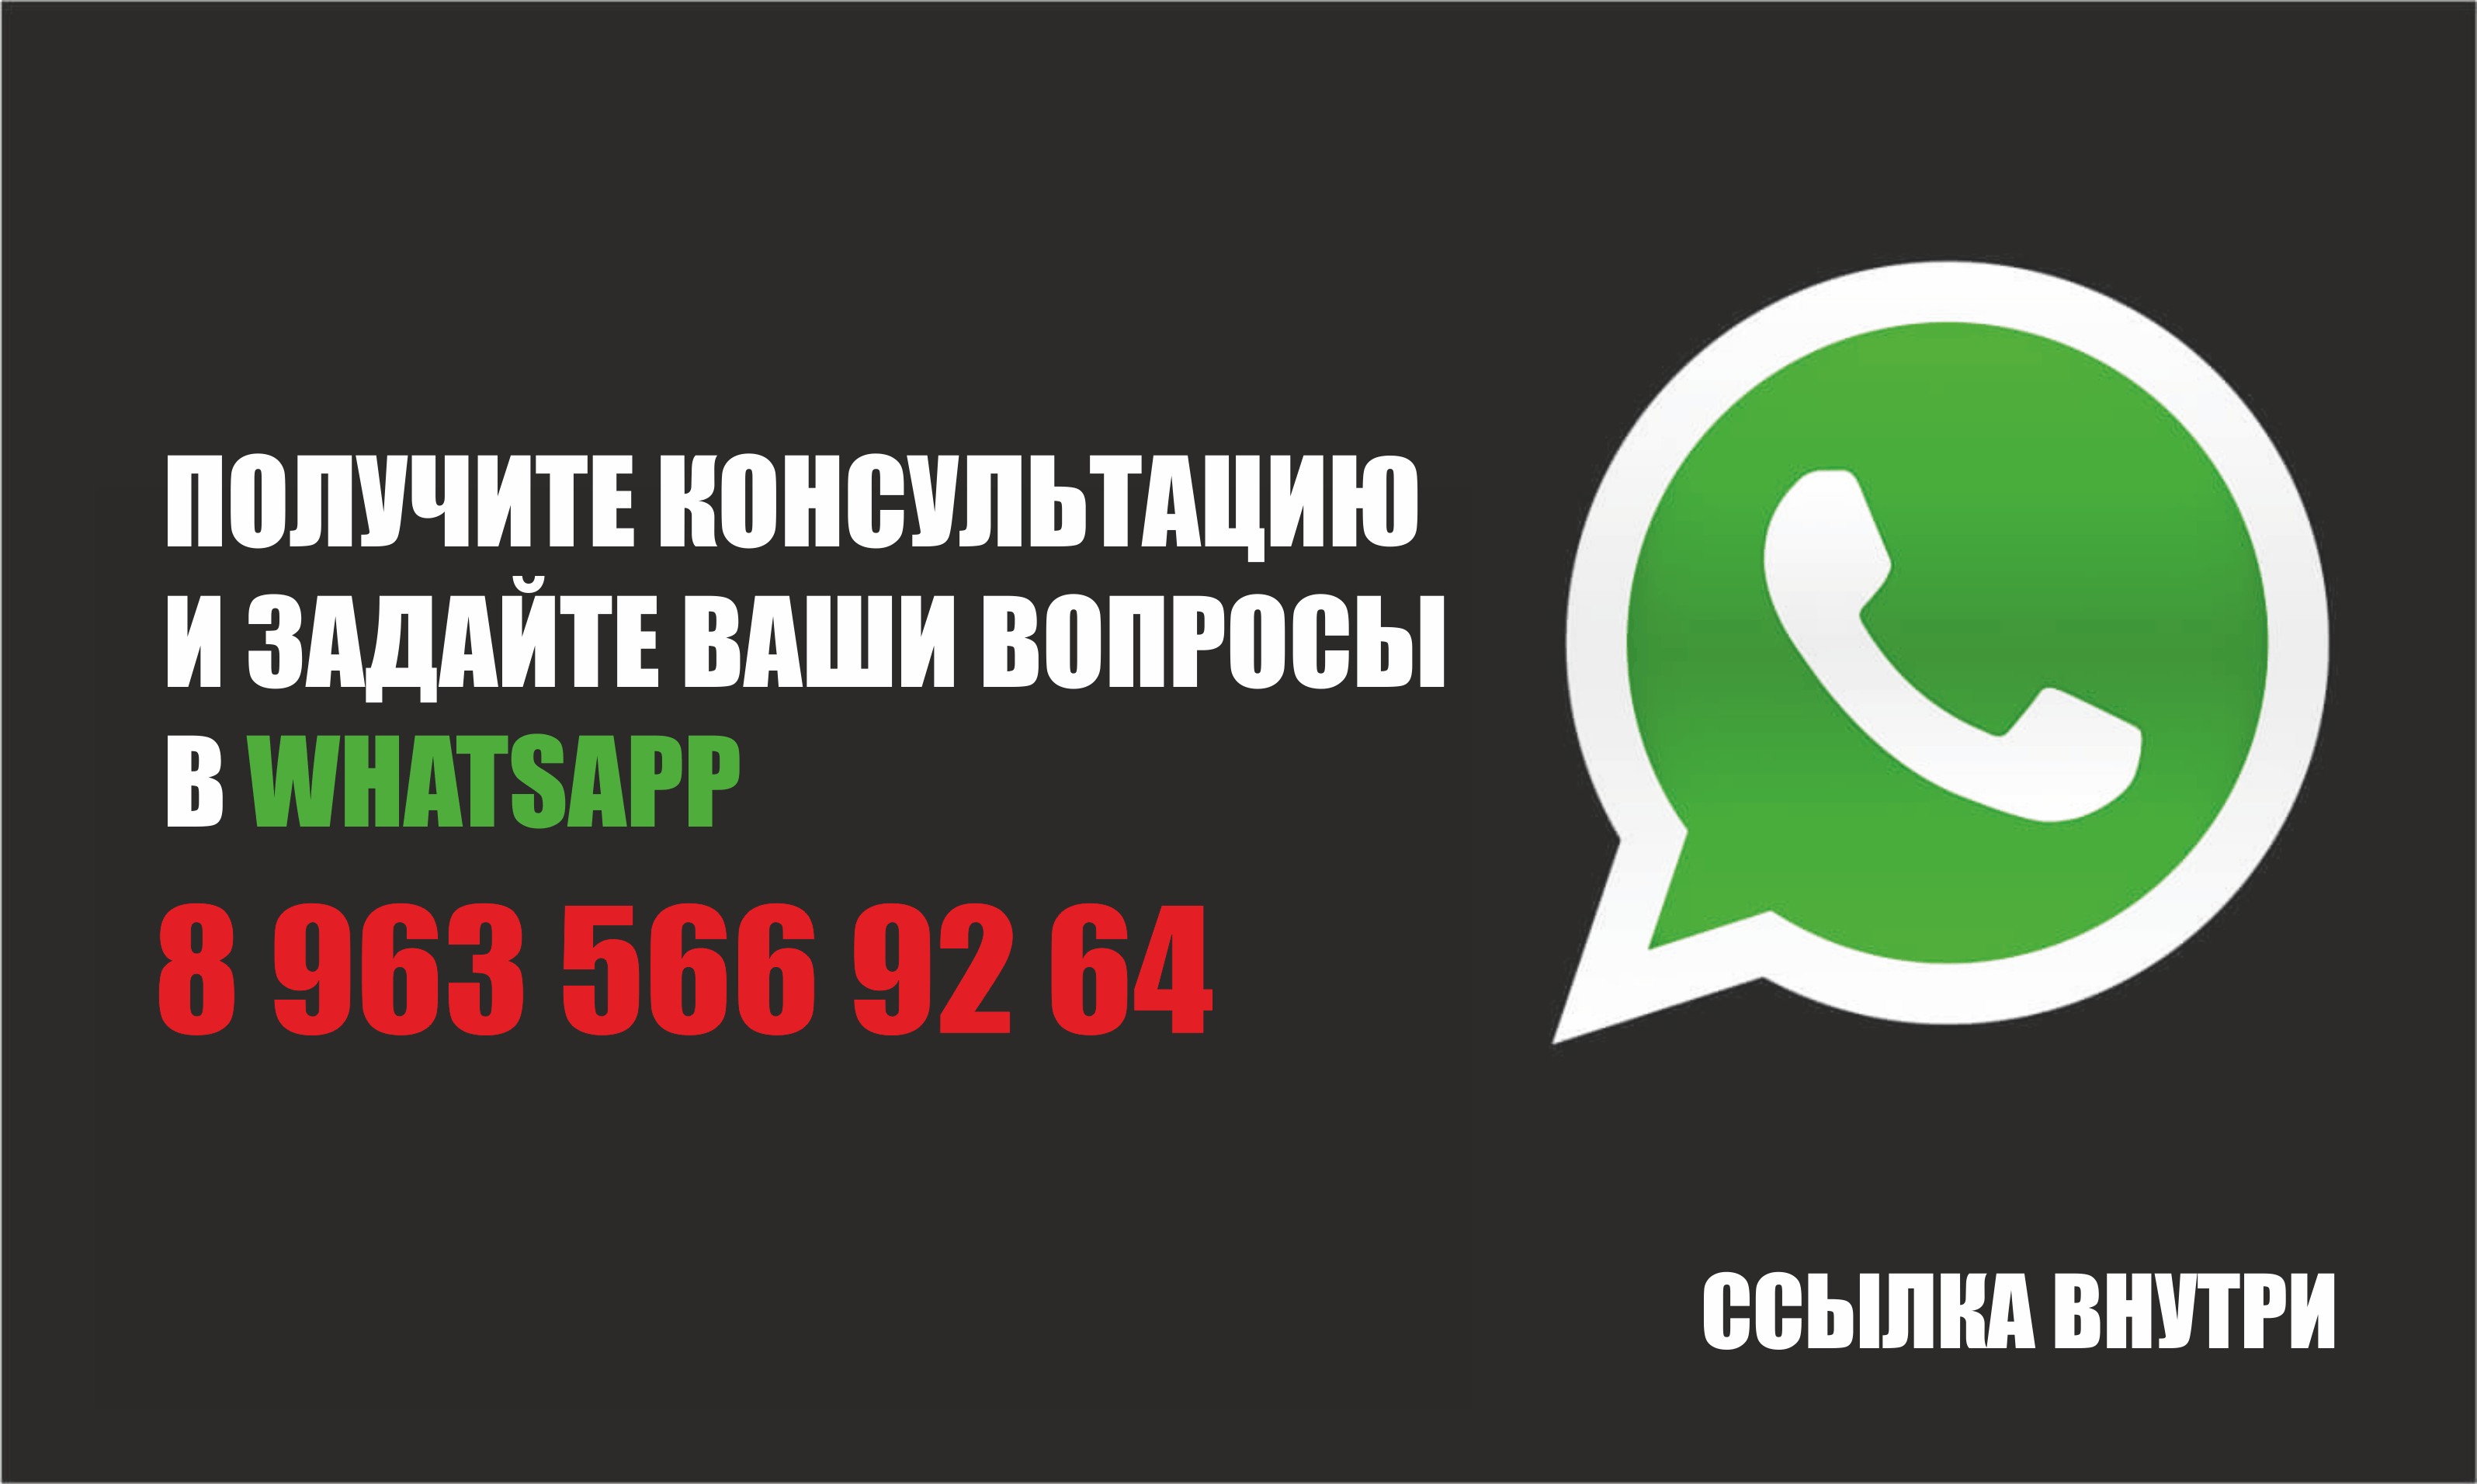 WhatsApp-консультация